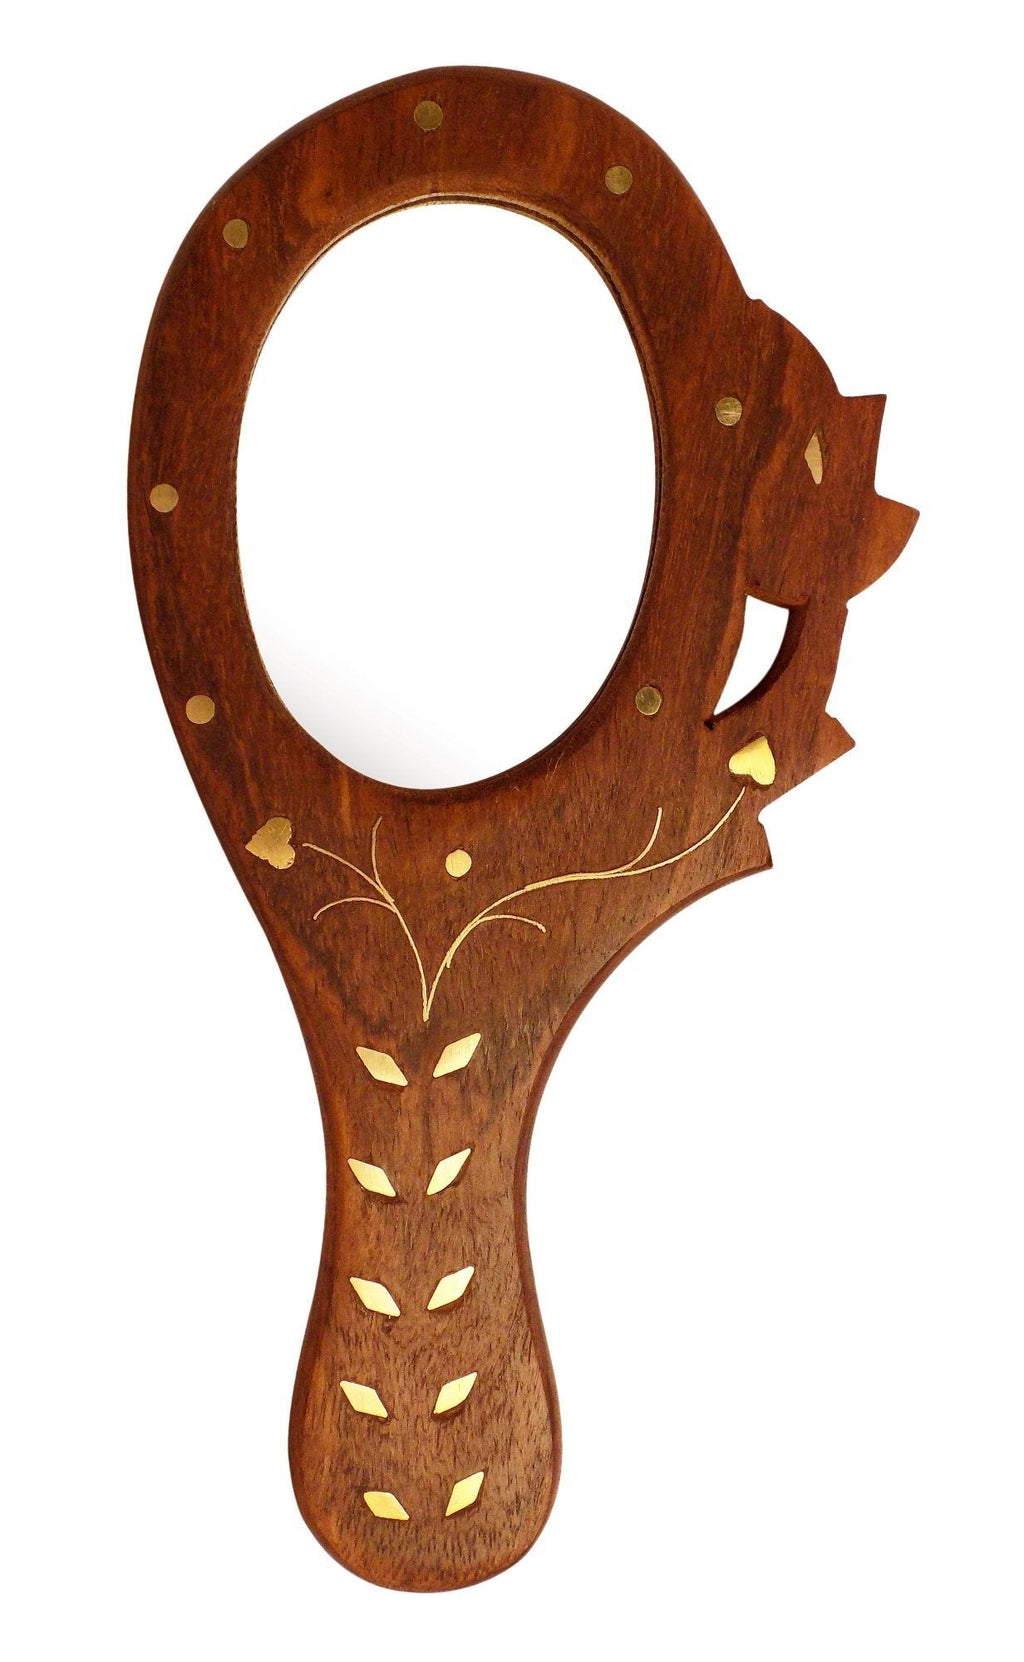 Crafts'man Handheld Mirrors- Wooden Small Hand Mirror (Brown) - LeoForward Australia